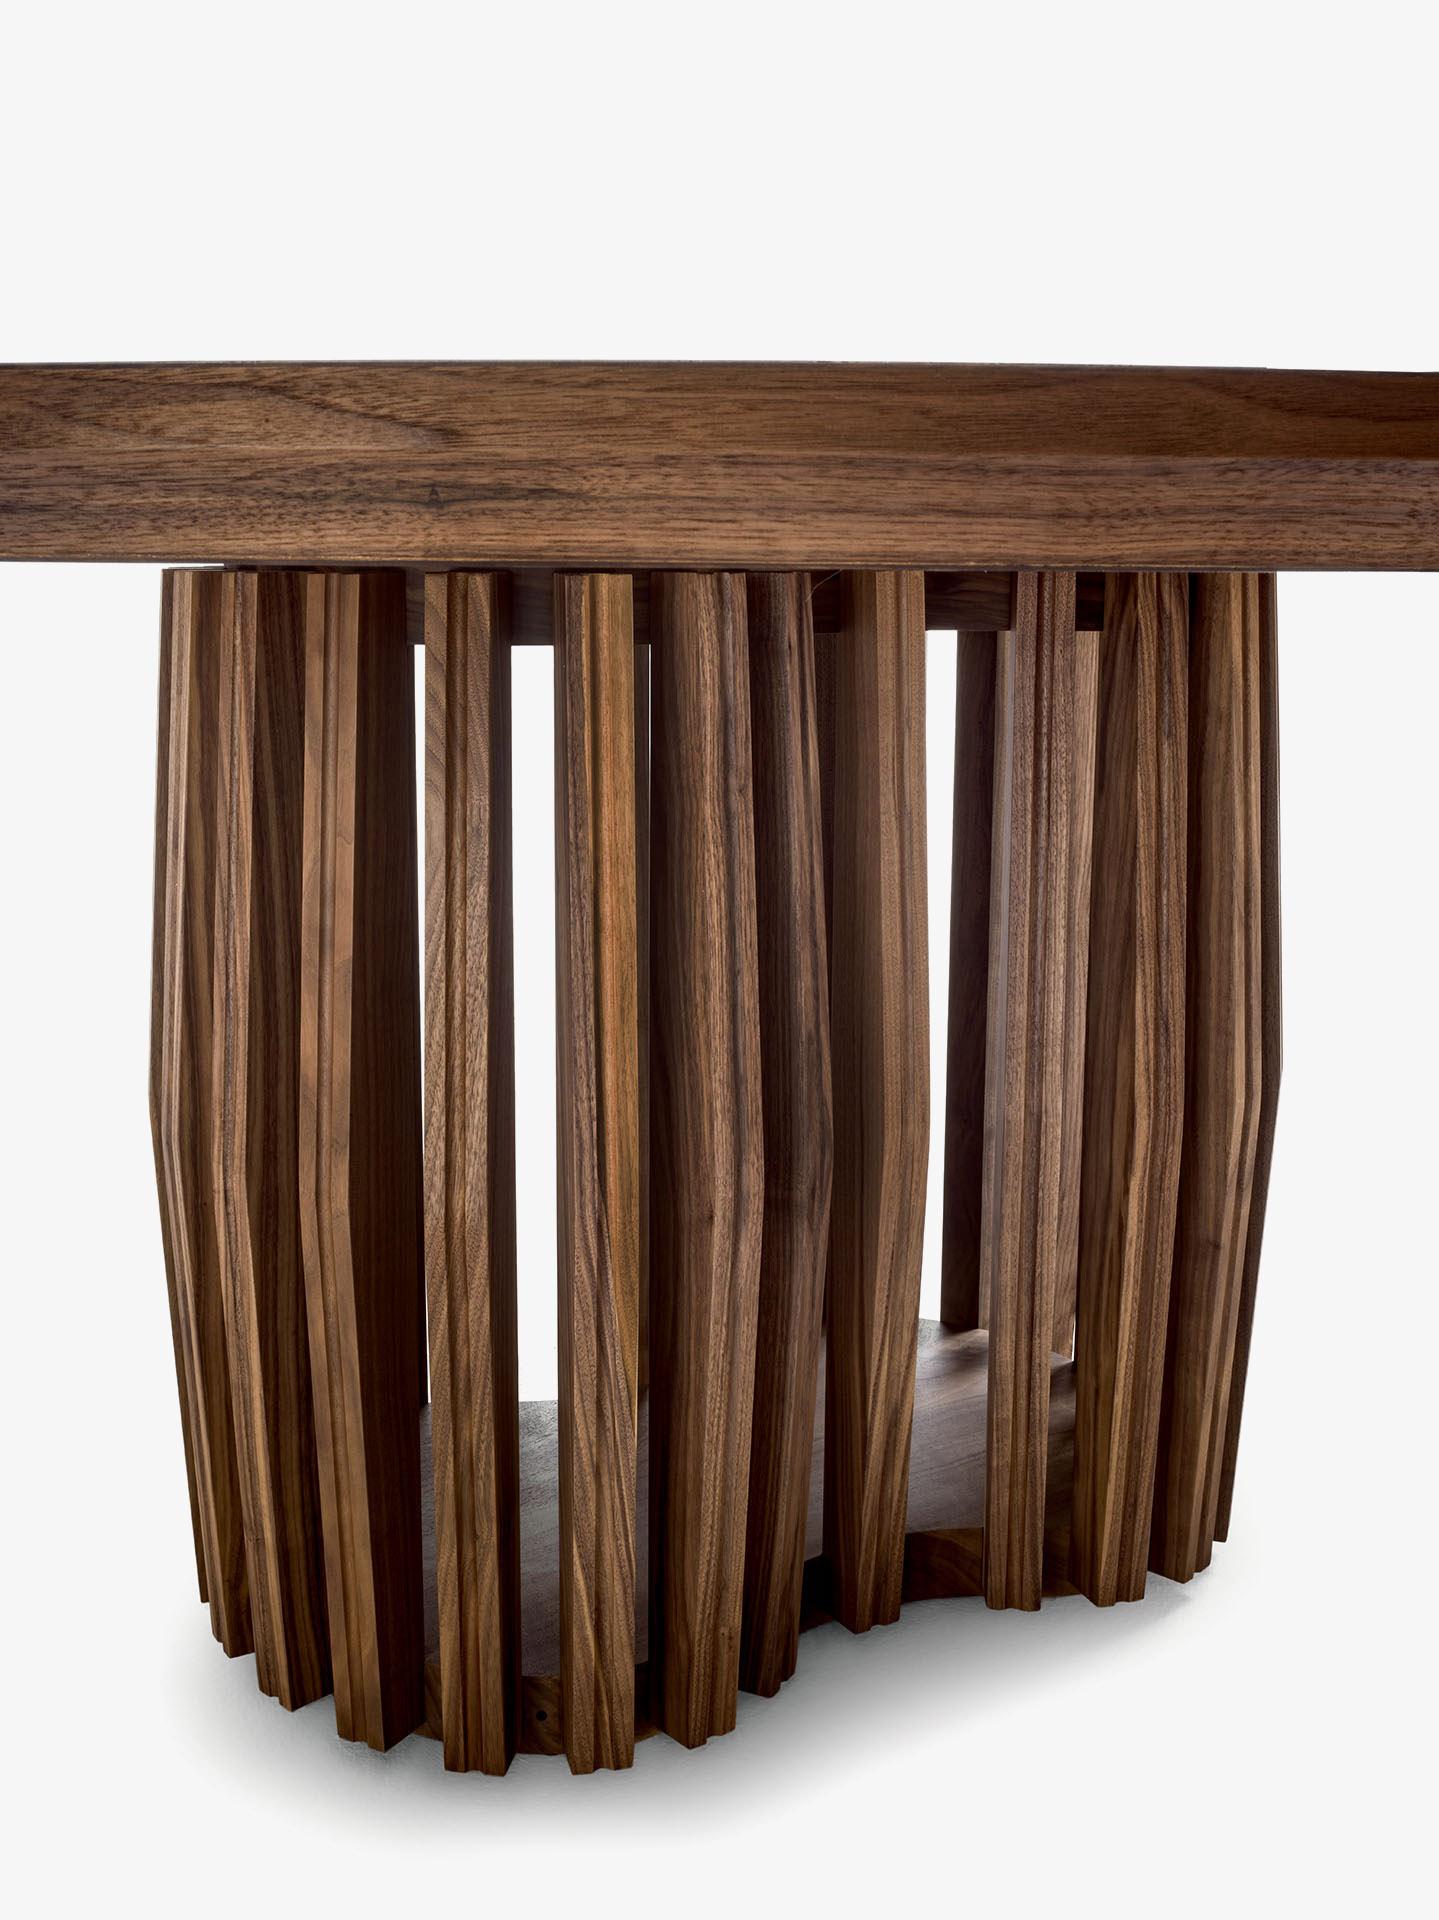 Runder, handgefertigter Tisch aus massivem, astfreiem Holz mit drehbarem Lazy Susan von 55